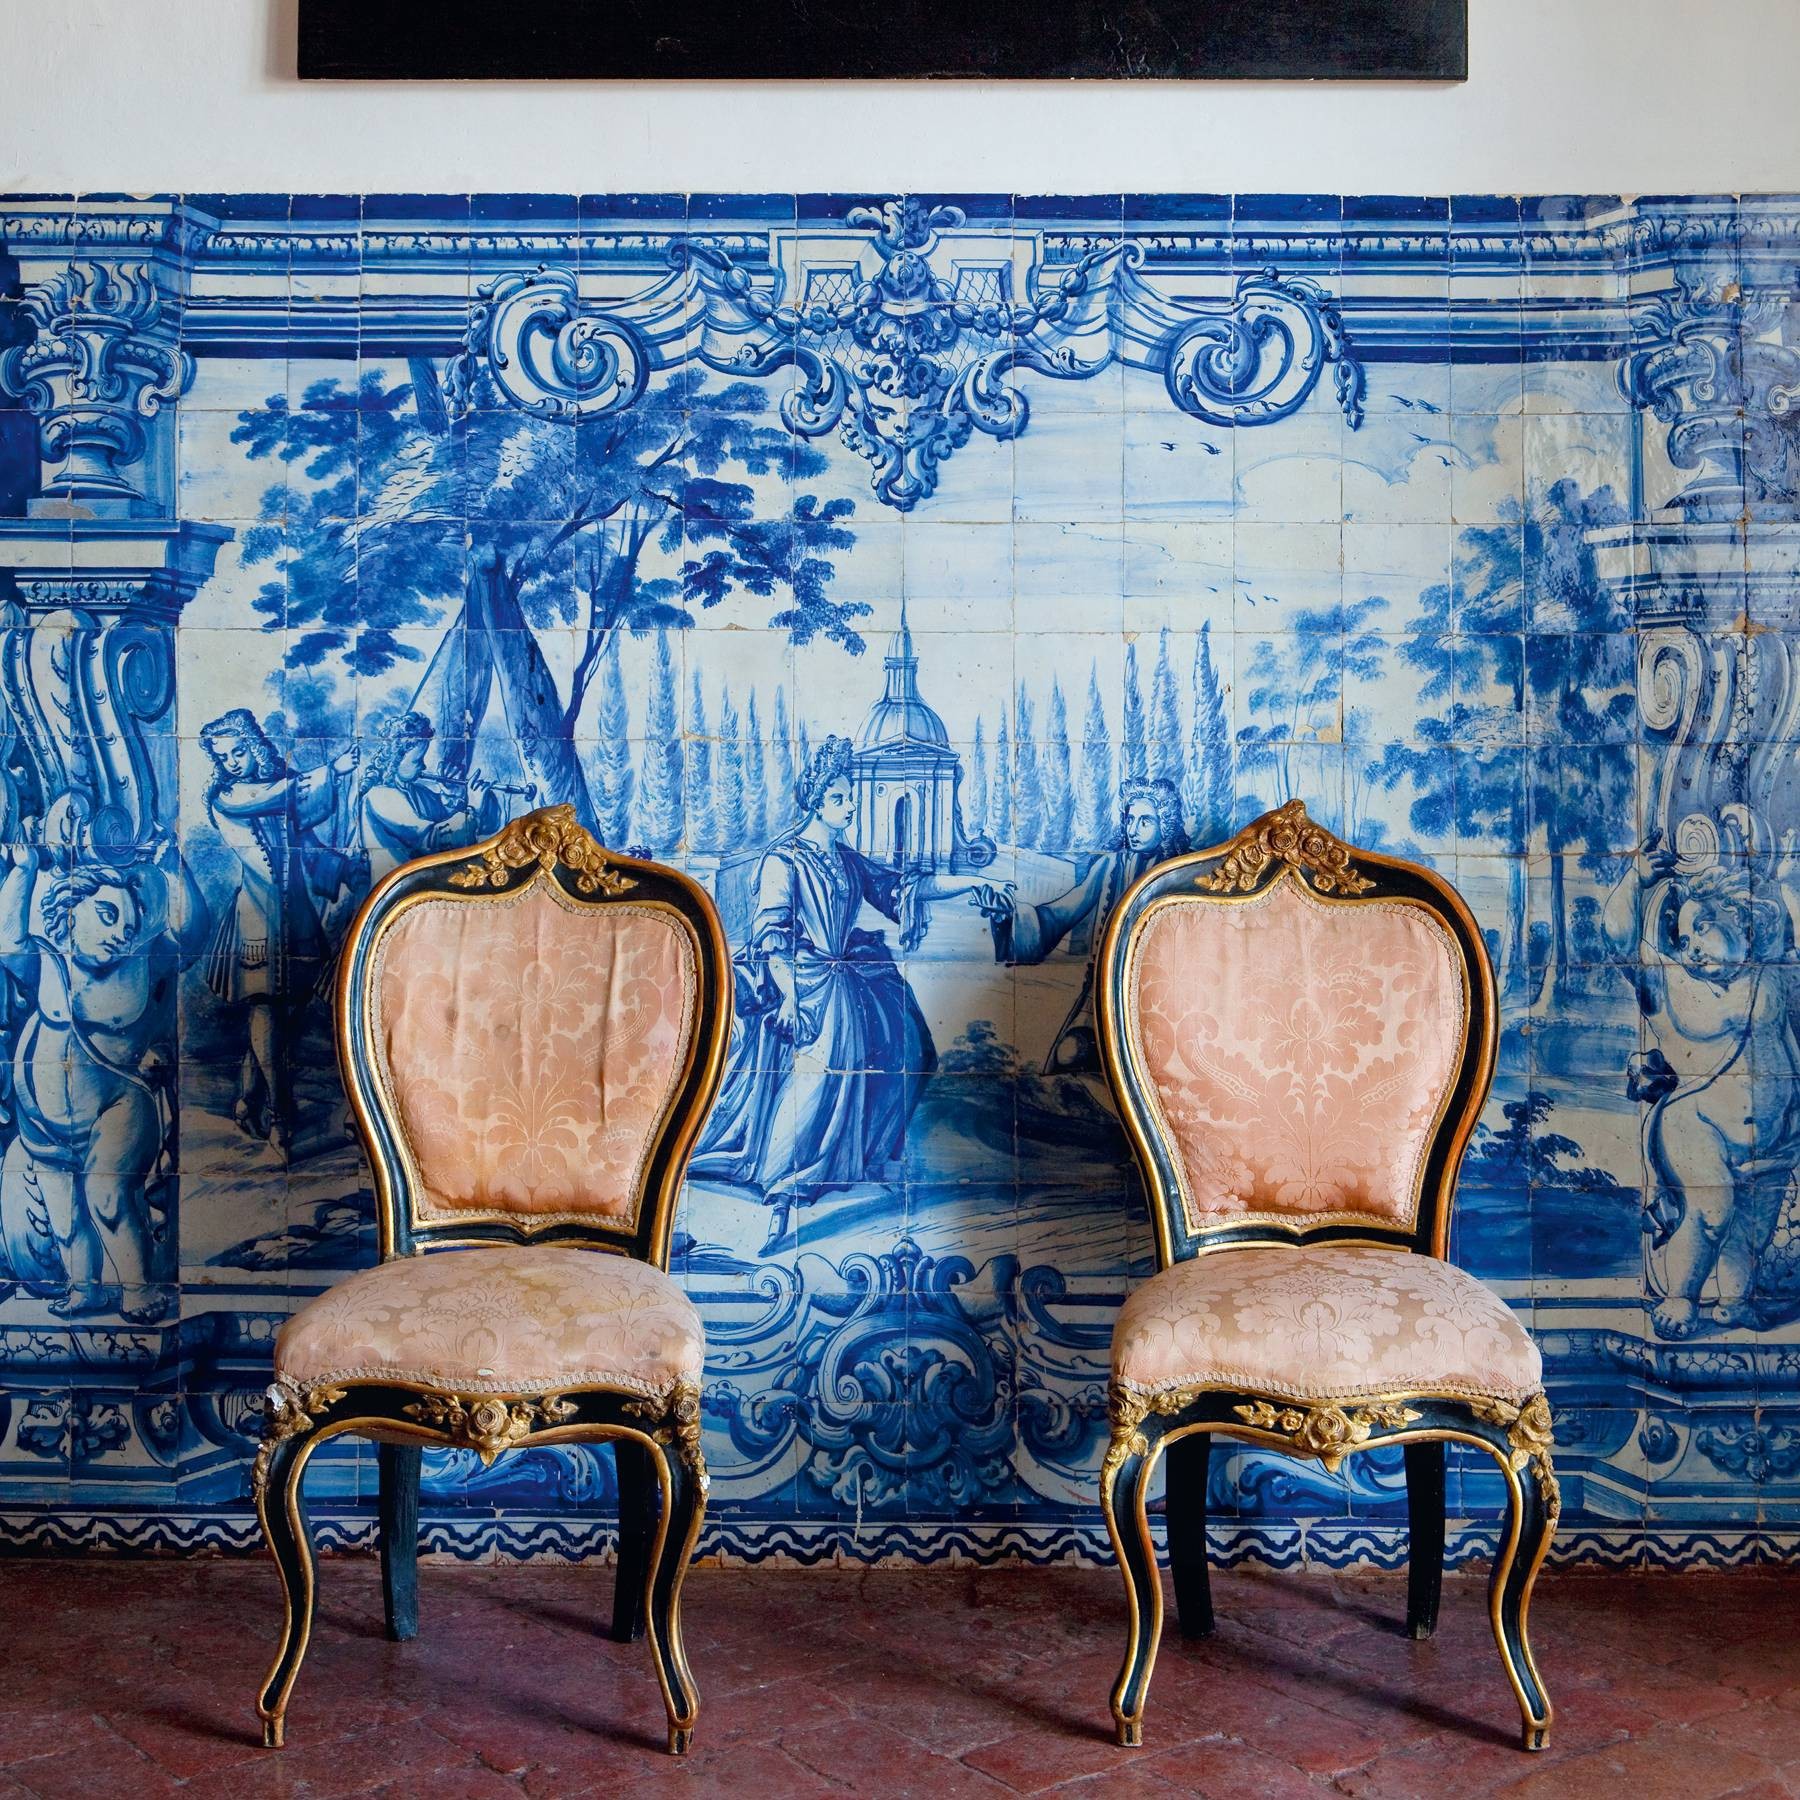 Décor do dia: quarto com decoração rústica e azulejos portugueses (Foto: Divulgação)